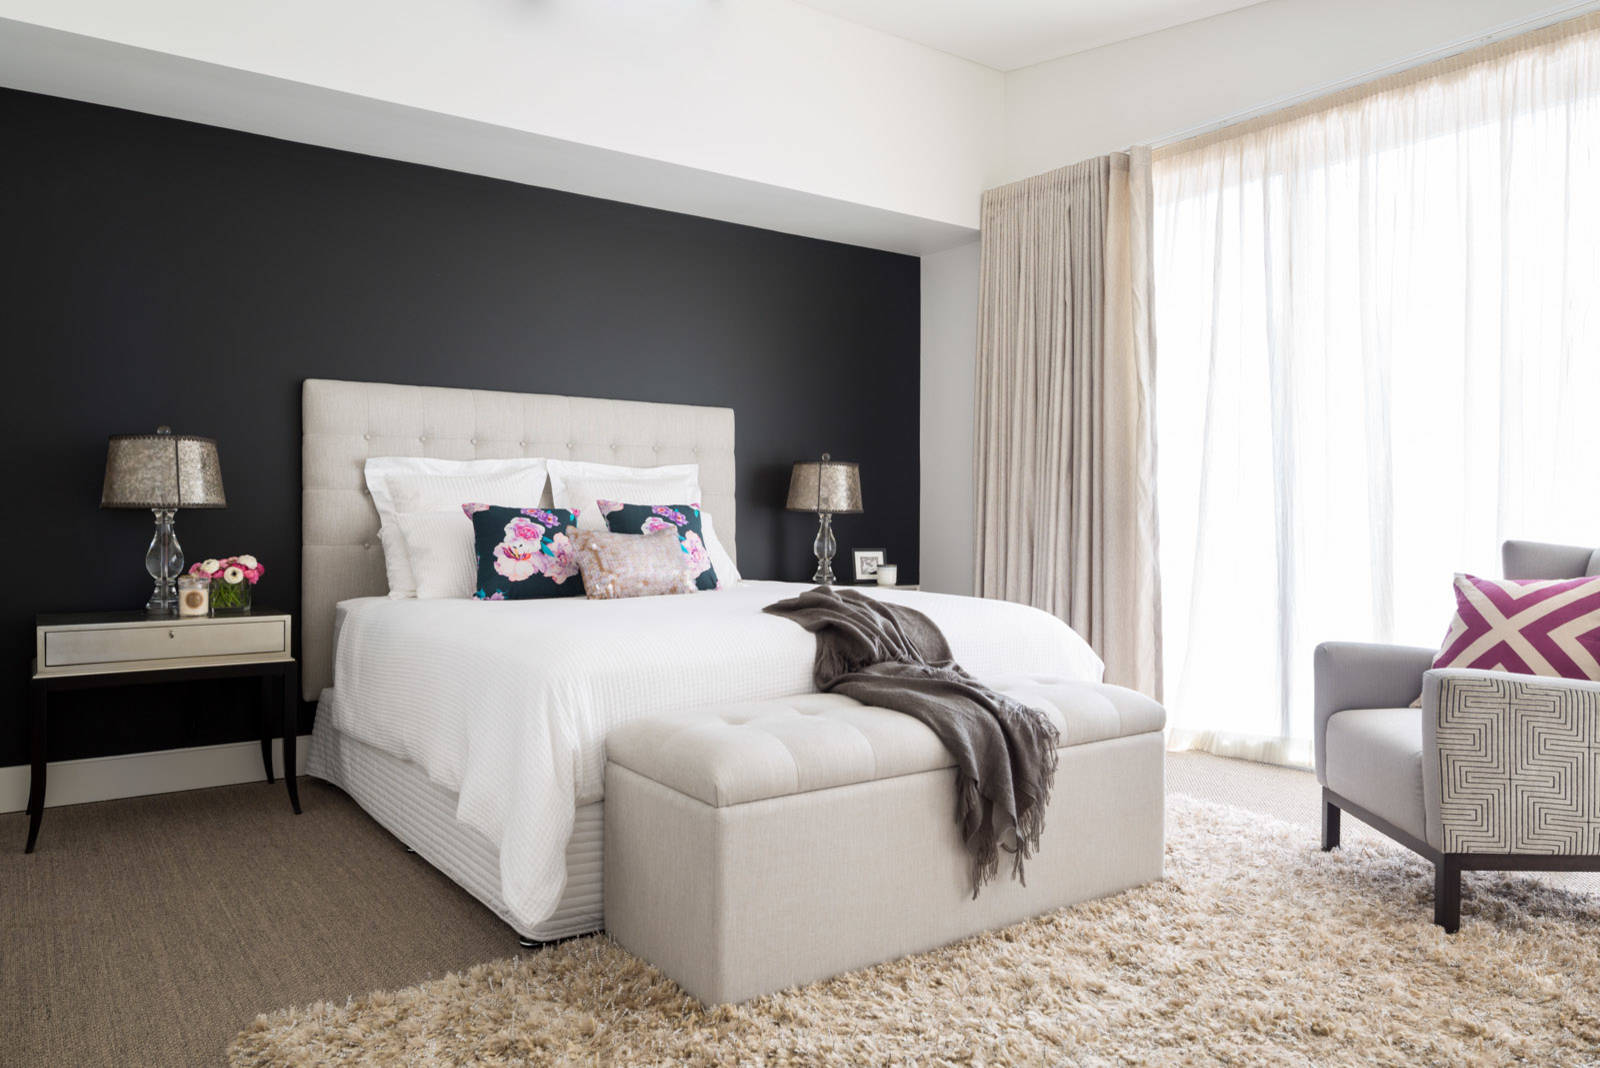 Bondi House - Contemporary - Bedroom - Sydney - by Carmen Parker Styling |  Houzz